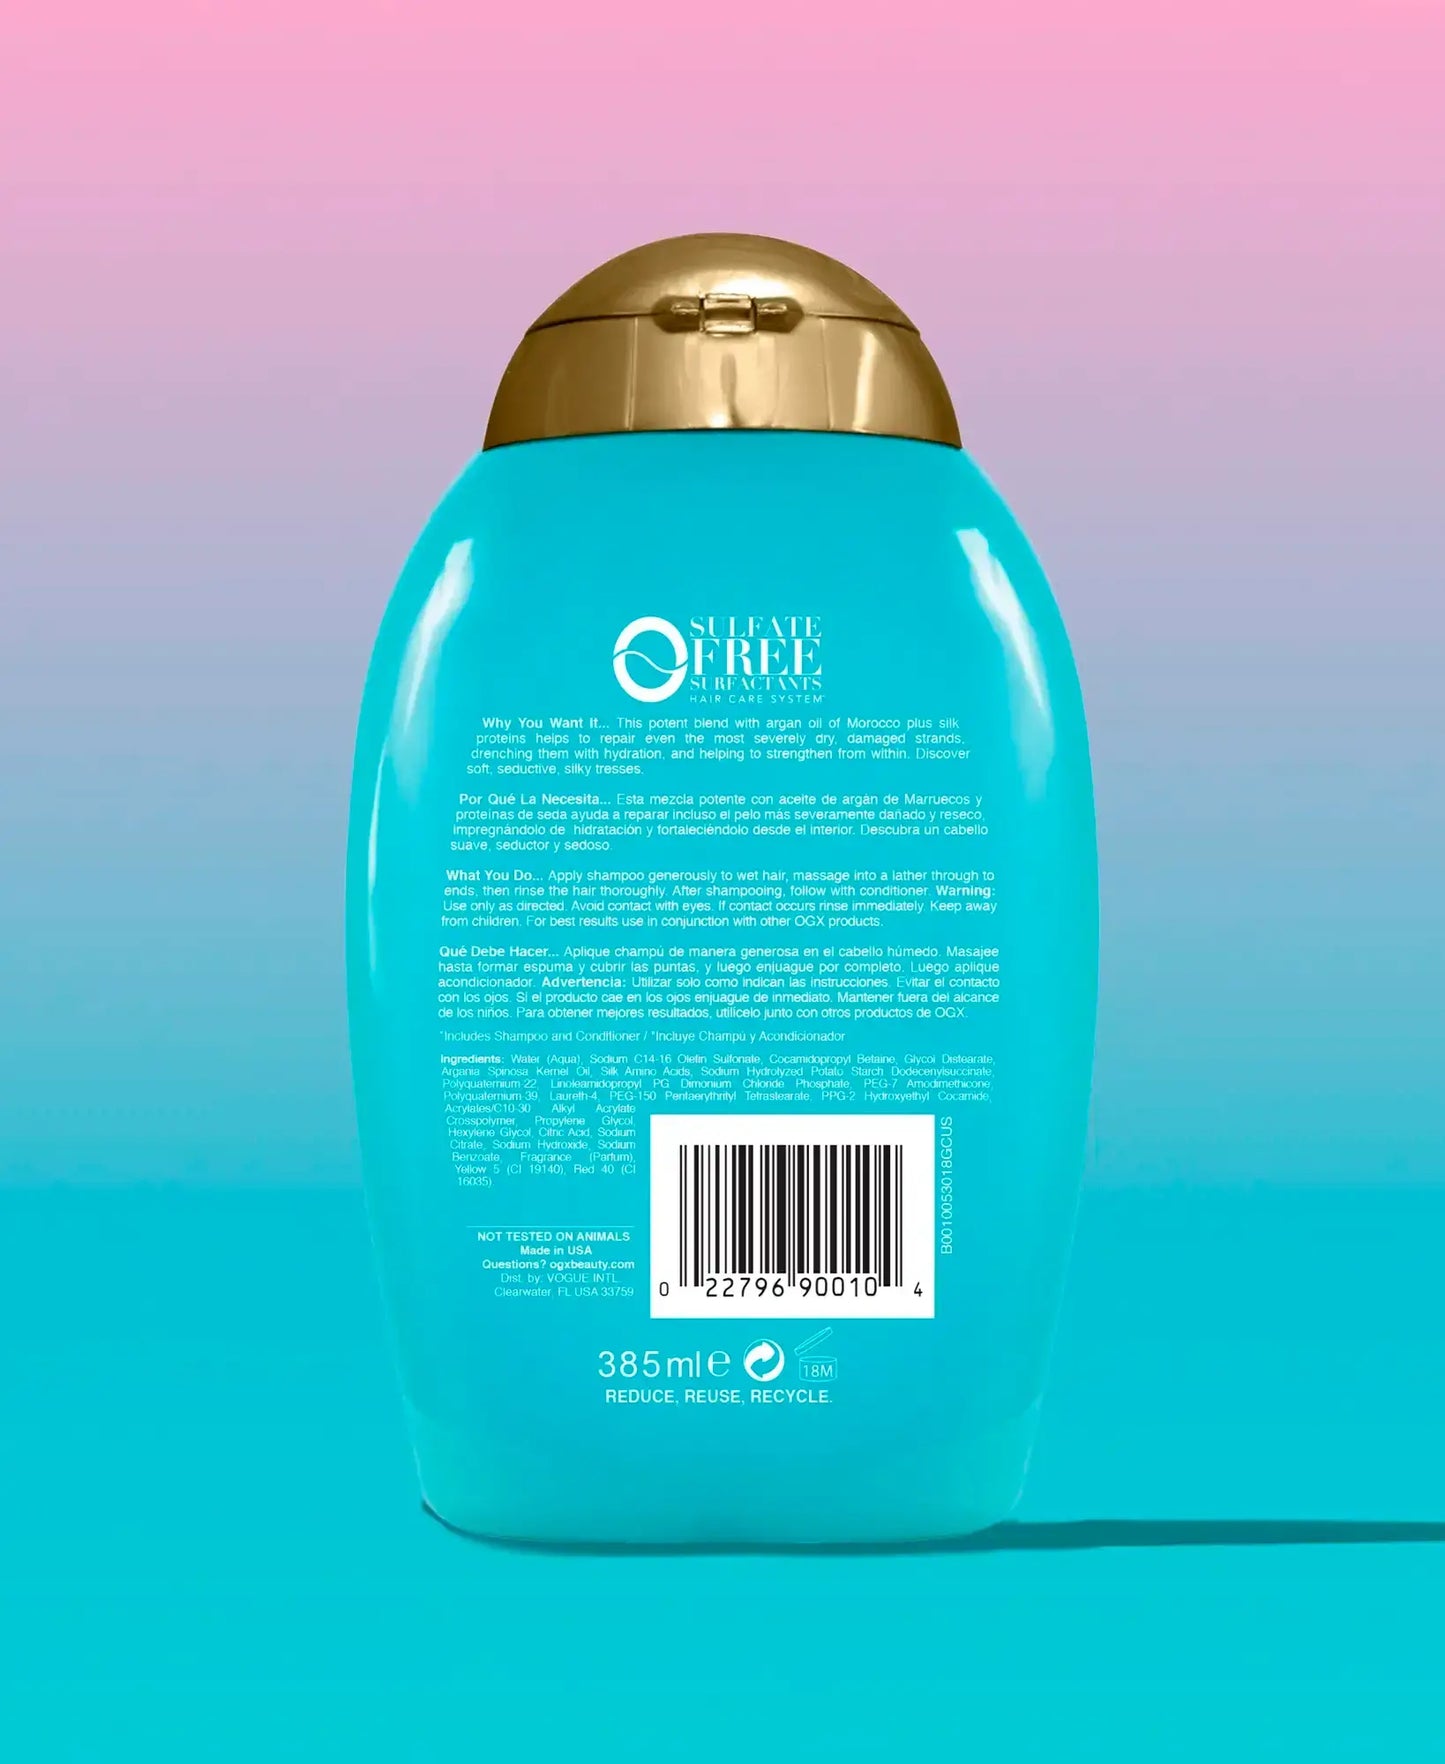 OGX Argan Oil Of Morocco Shampoo